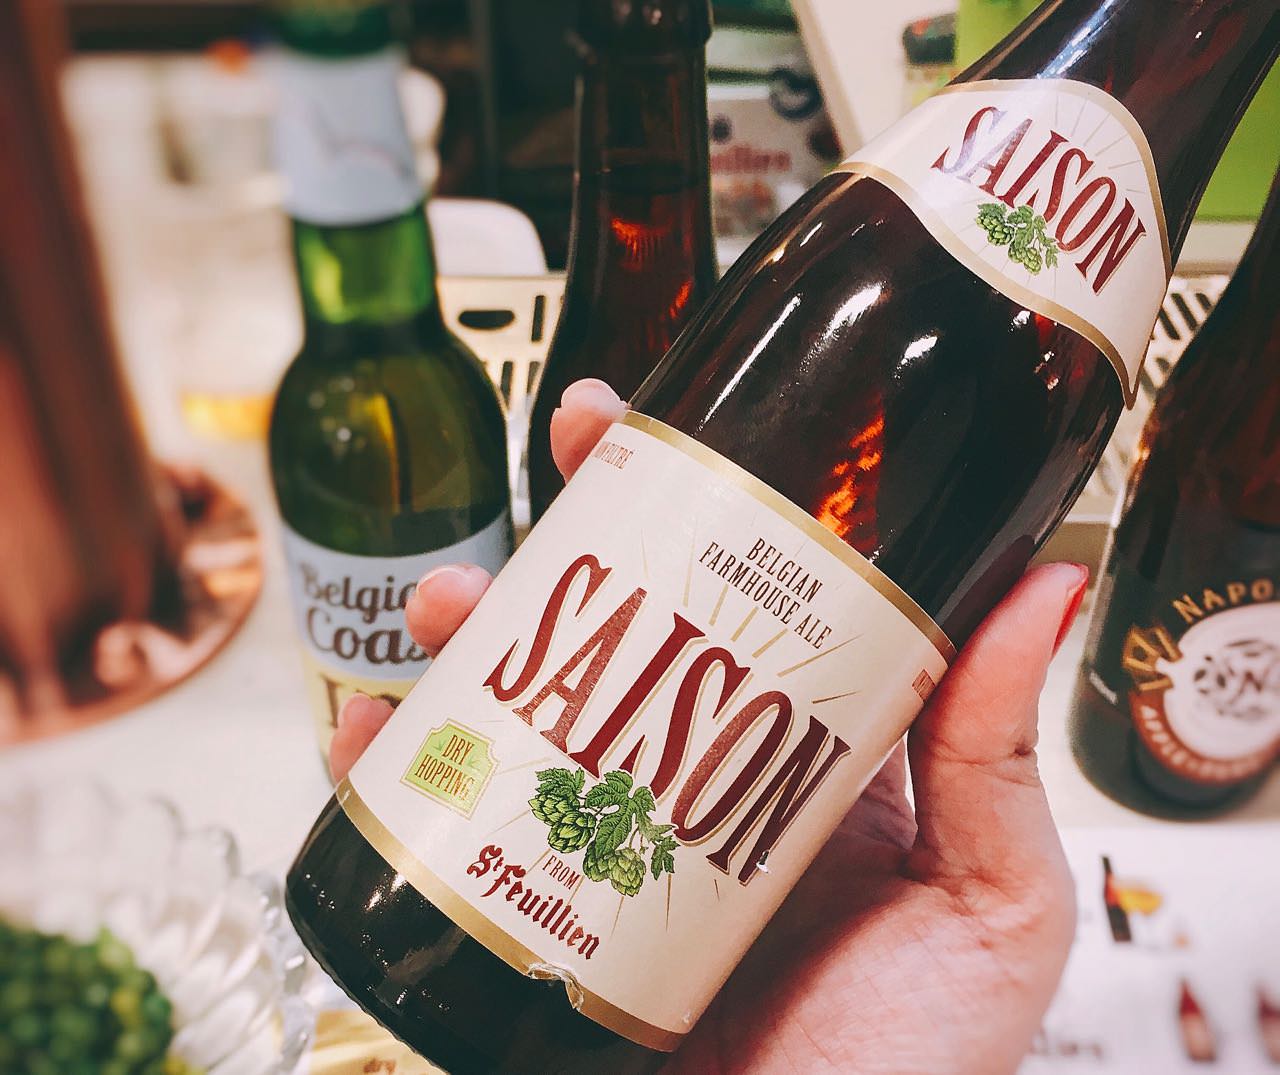 ST. FEUILLIEN’ SAISON 》比利時聖富勒農夫啤酒  | Belgian Beer